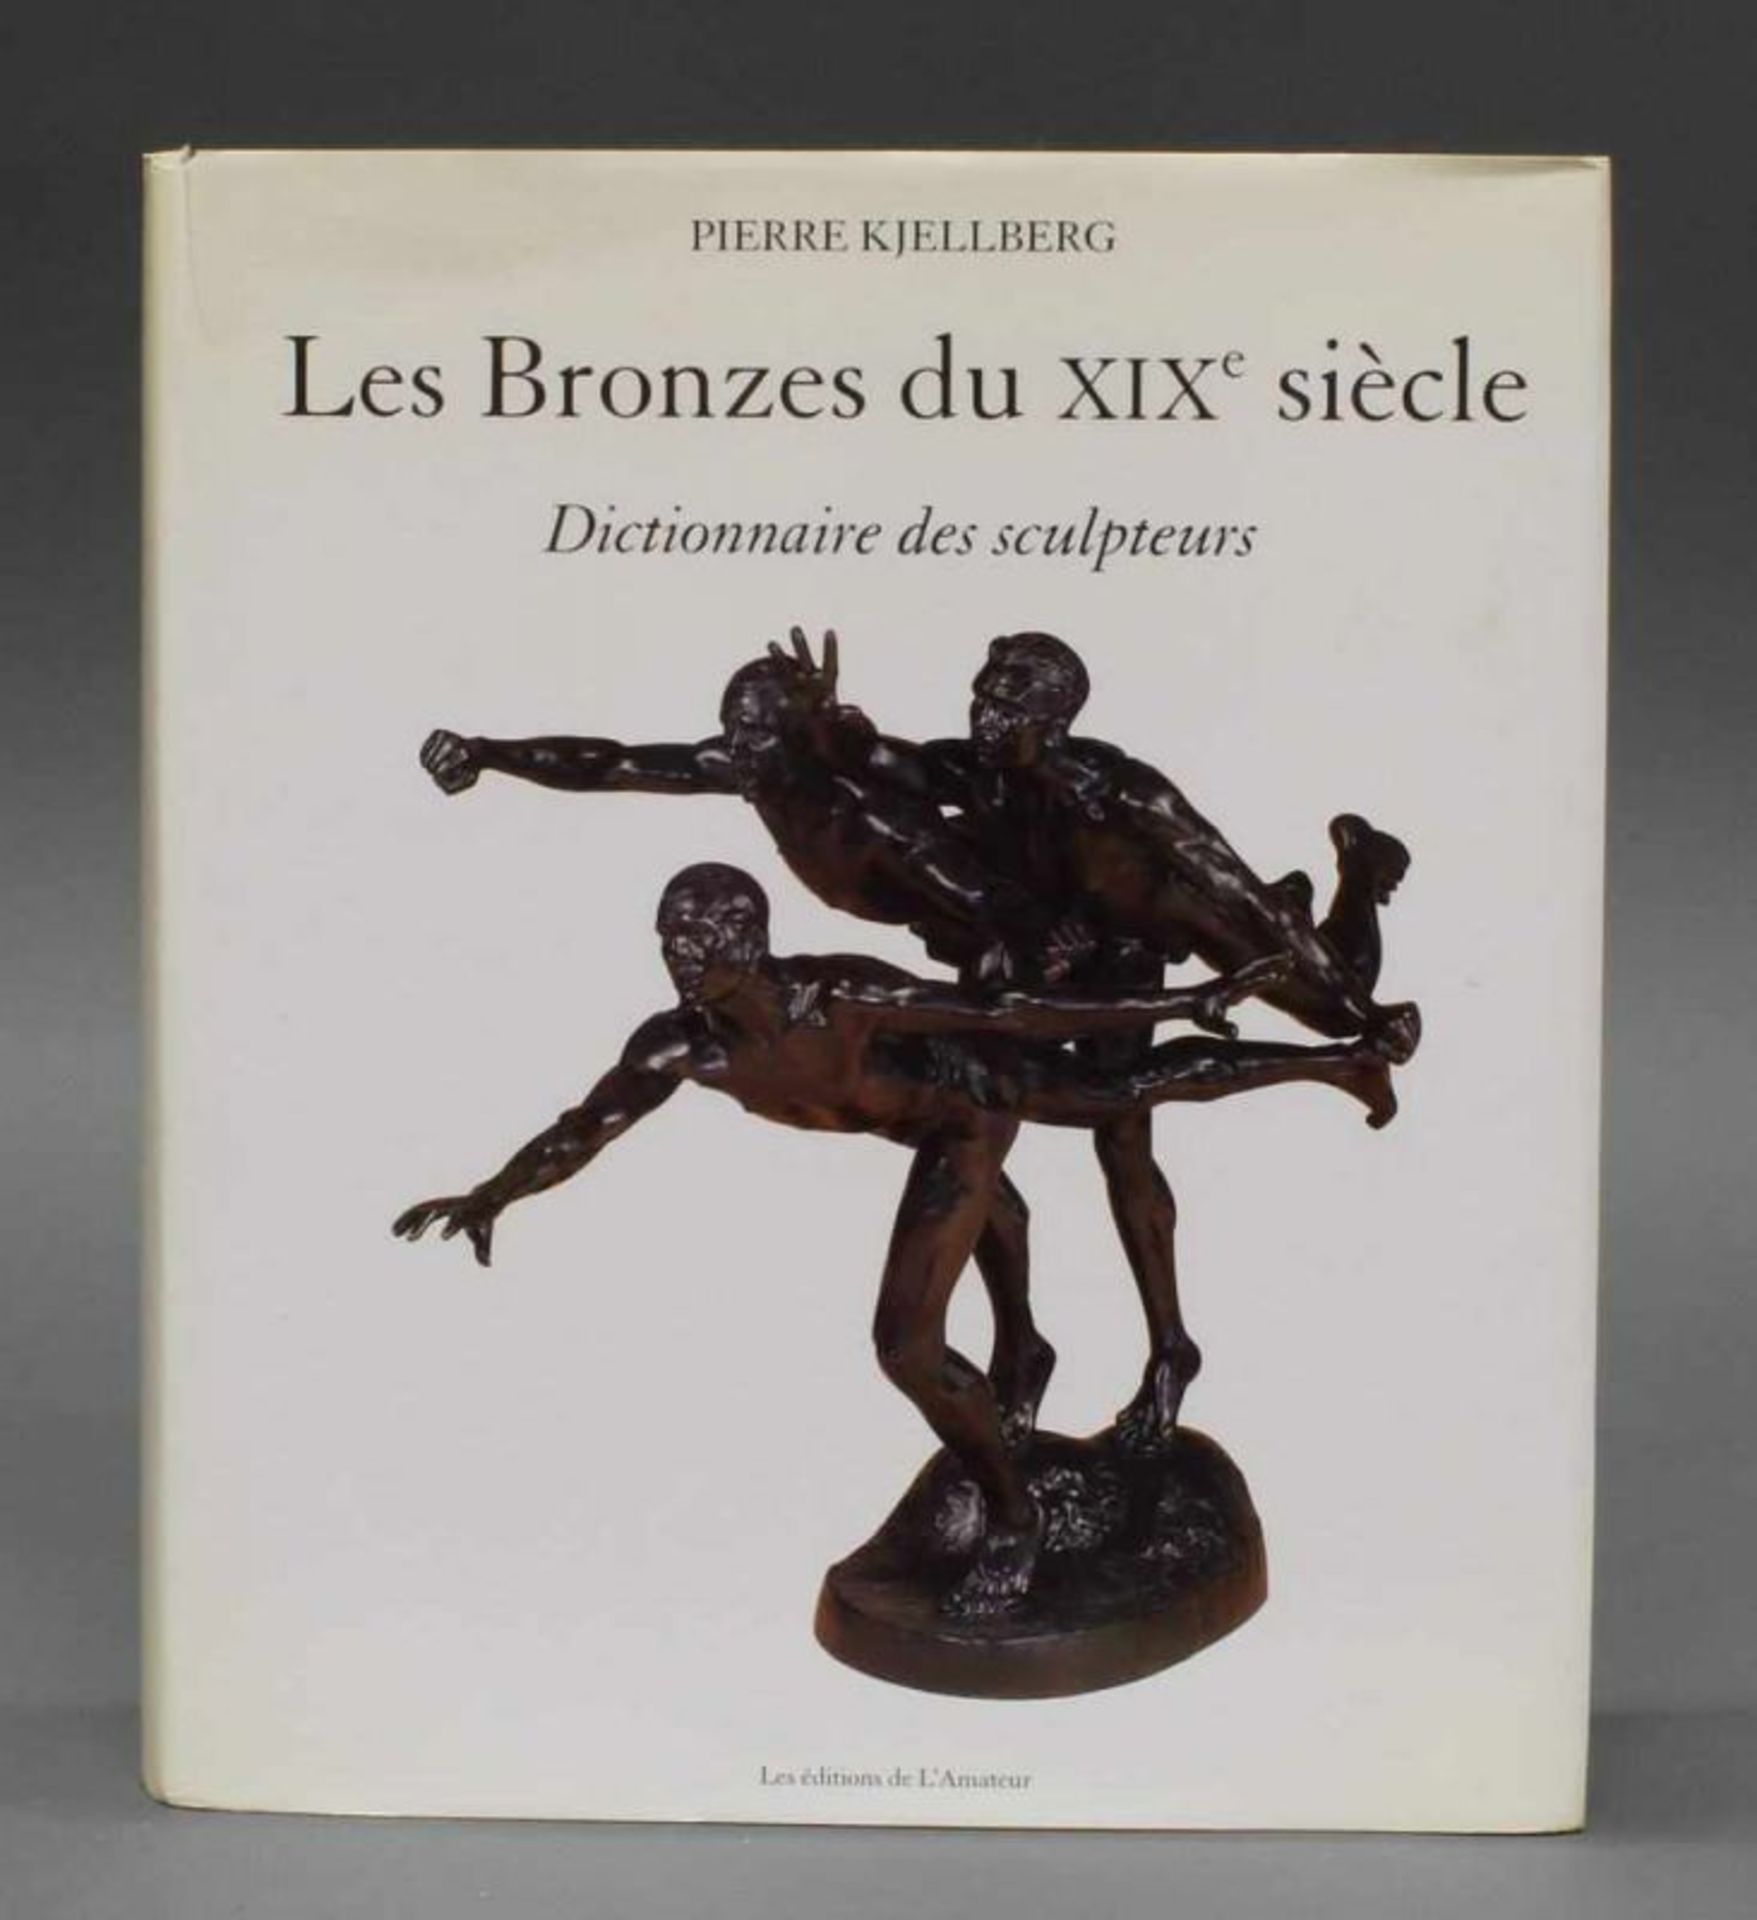 Pierre Kjellberg, "Les Bronzes du XIXe siècle", Les éditions de L'Amateur, Paris, 2005, 716 S. (